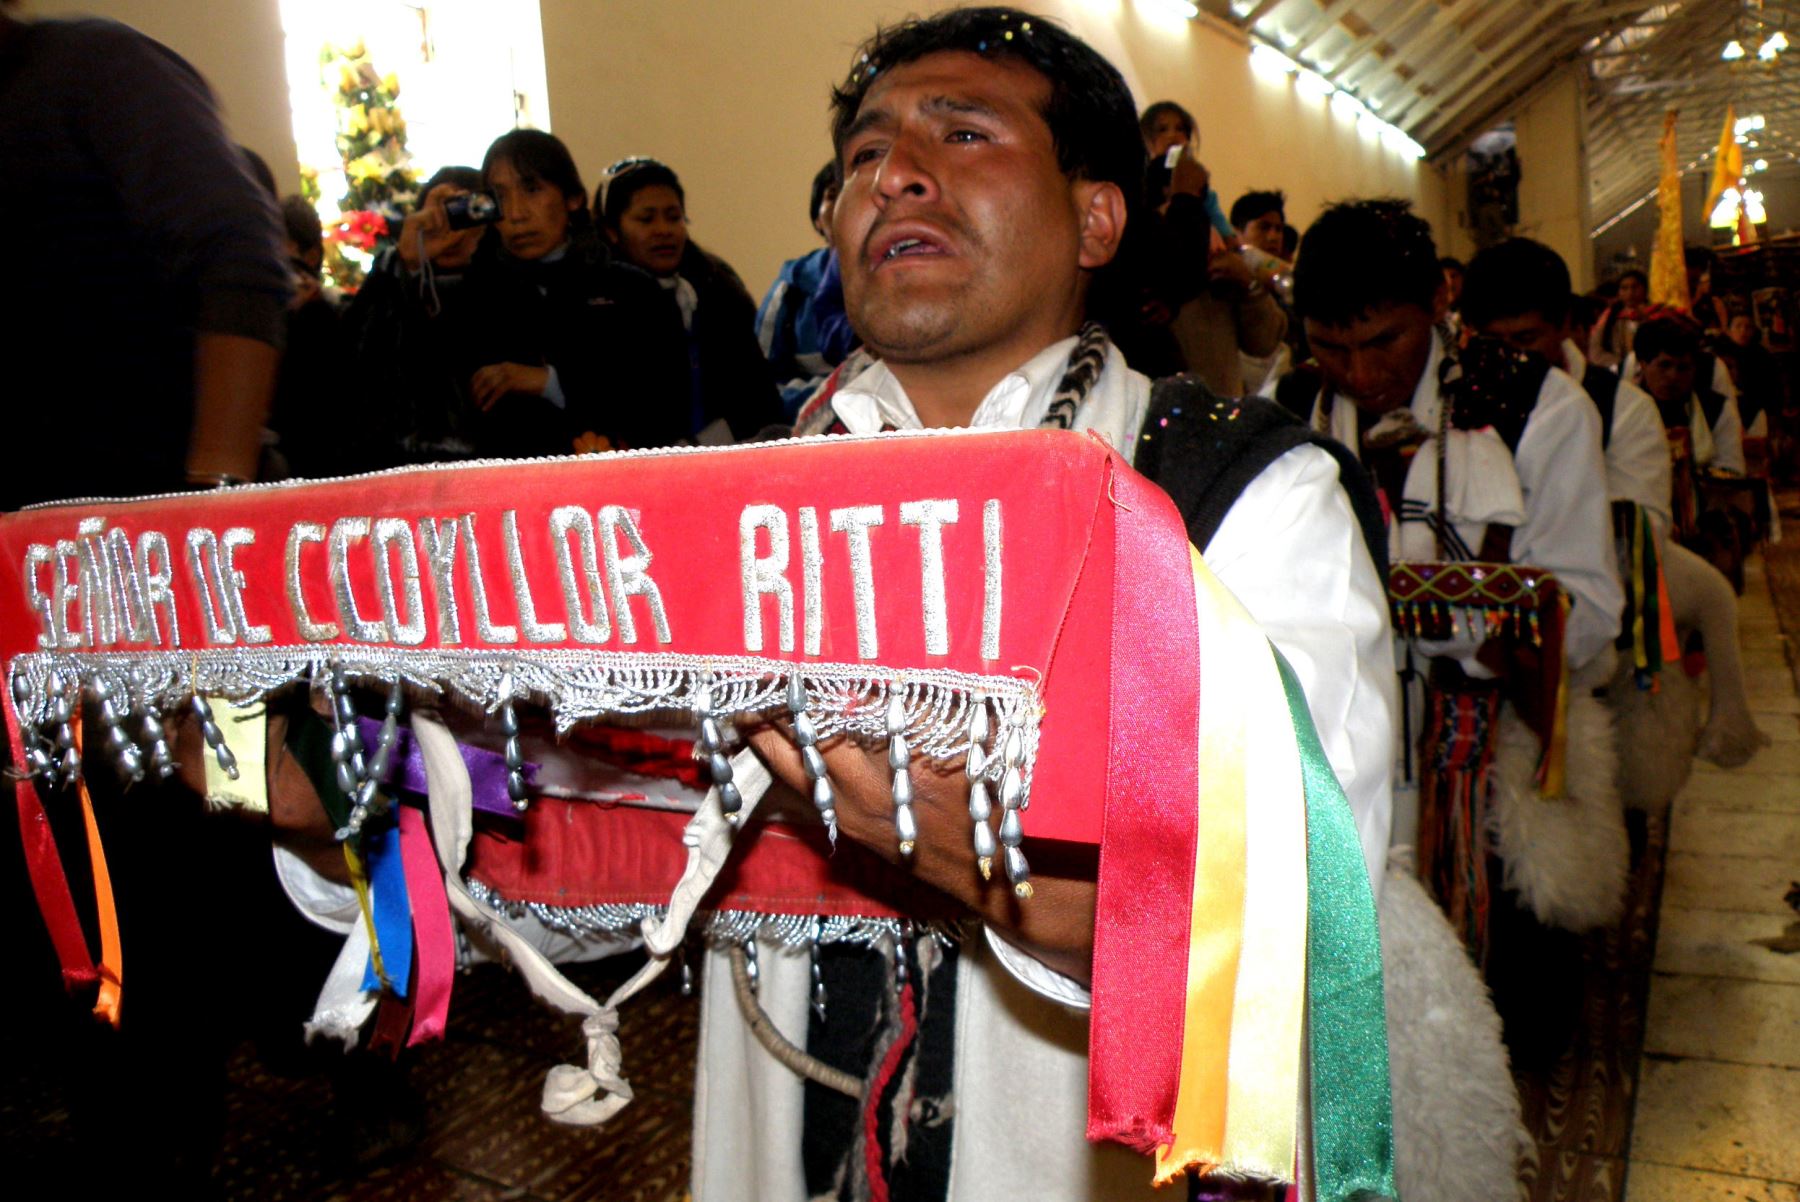 La peregrinación al santuario del Señor de Qoyllur Riti es una de las principales actividades durante el mes jubilar del Cusco. Foto: ANDINA/Percy Hurtado Santillán.